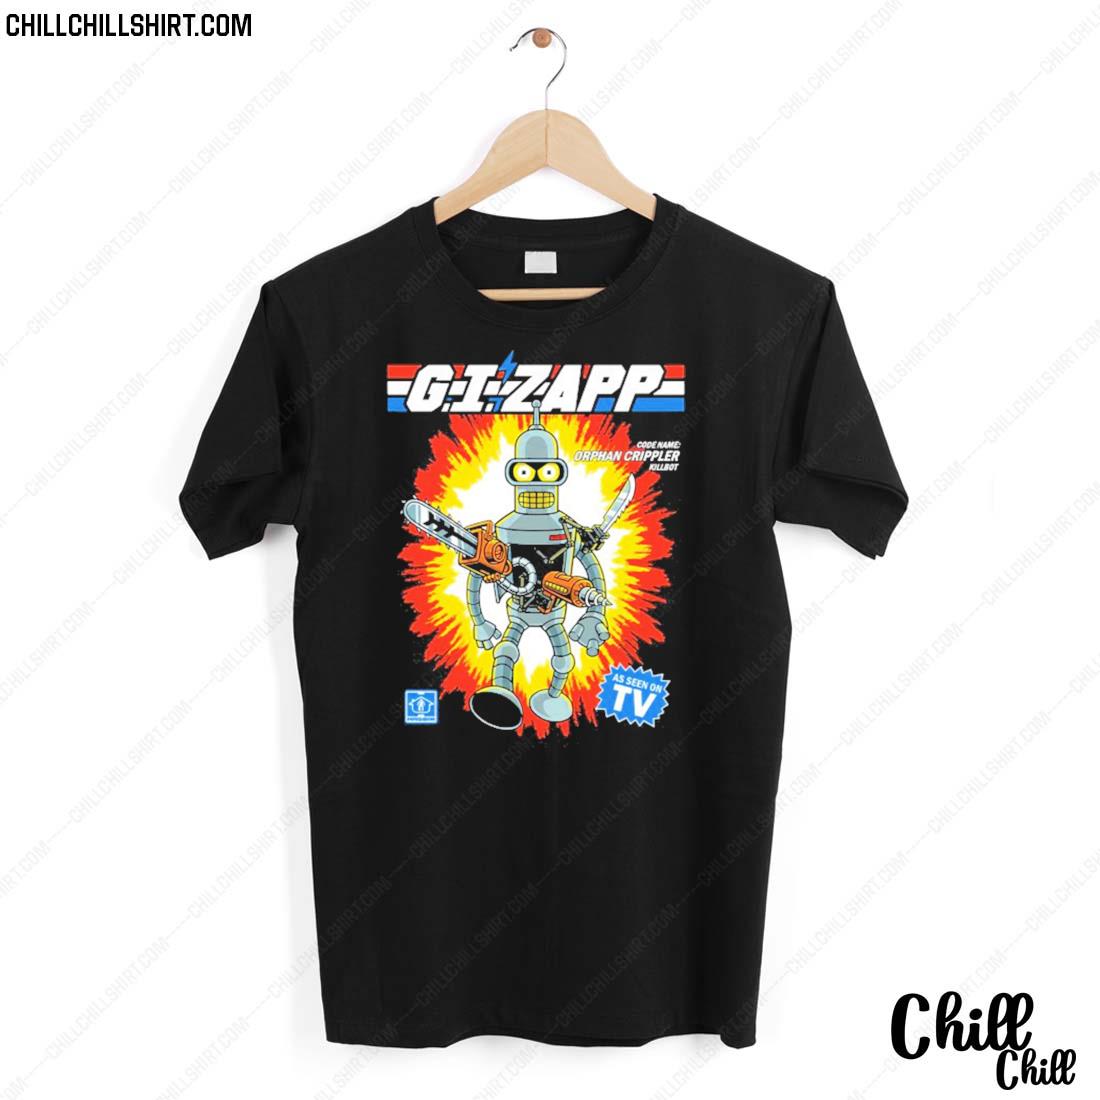 Official orphan Crippler Gizapp Futurama Shirt